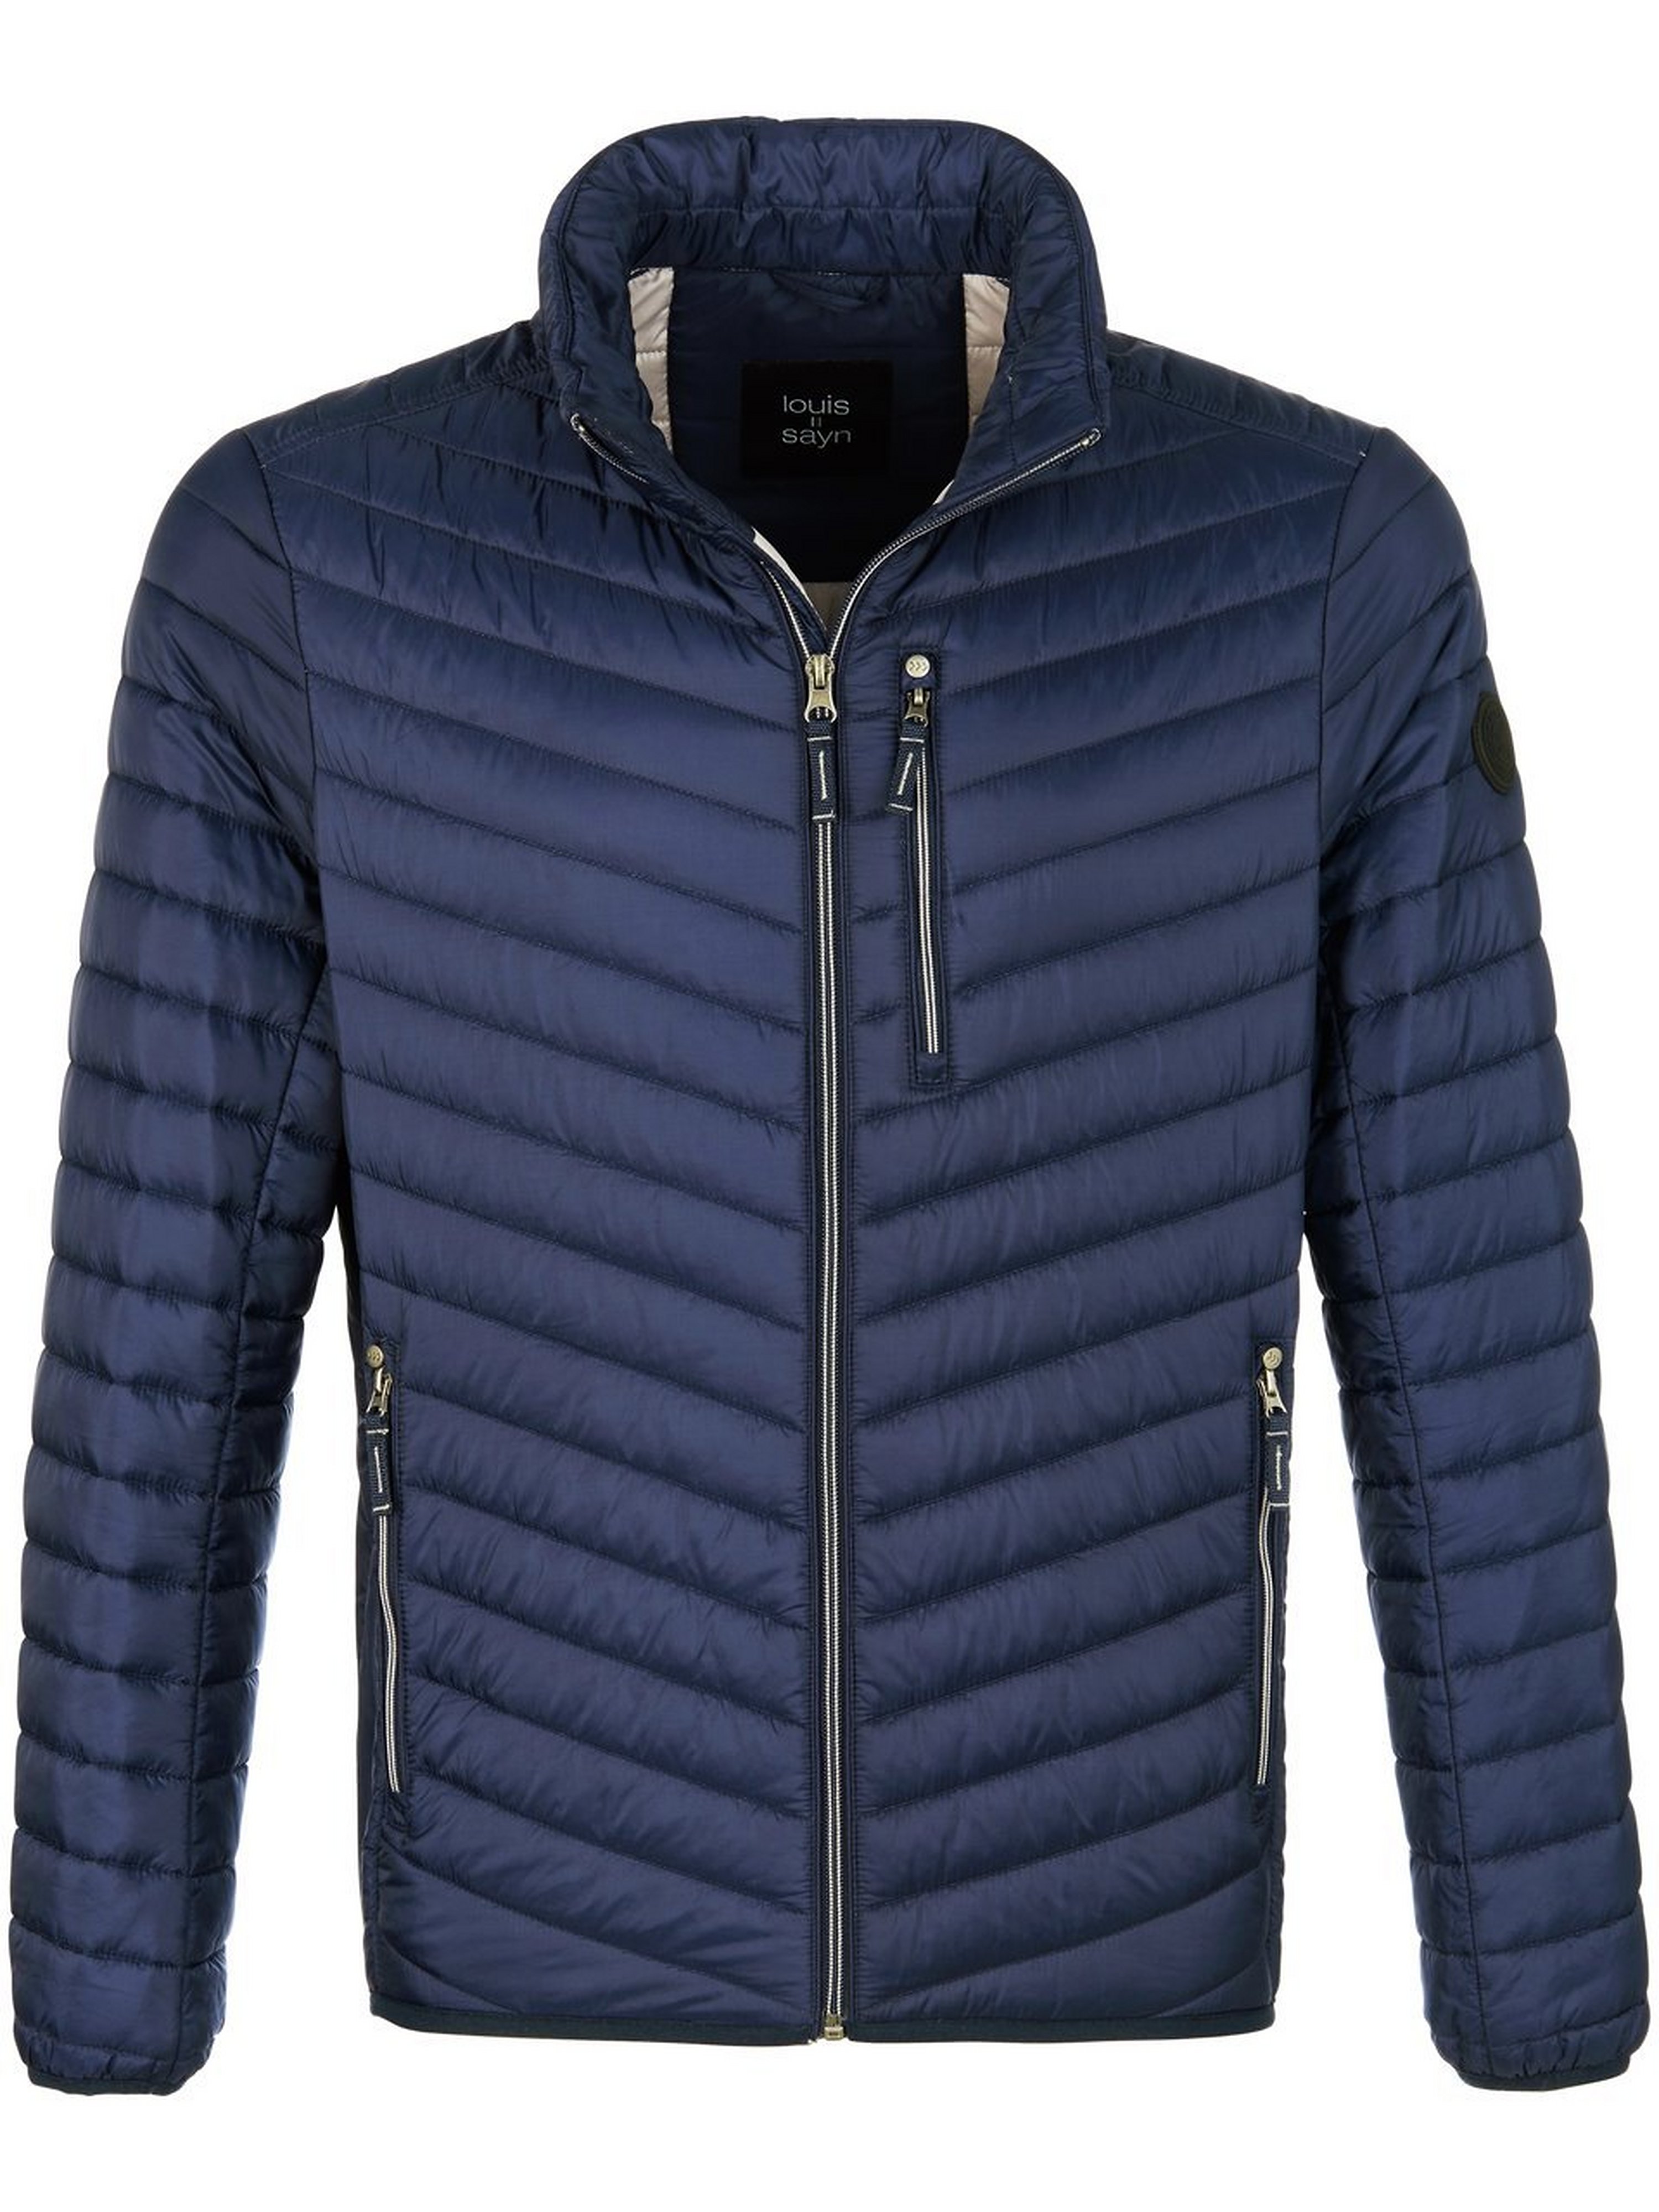 Windwerende en waterafstotende gewatteerde jas Van Louis Sayn blauw